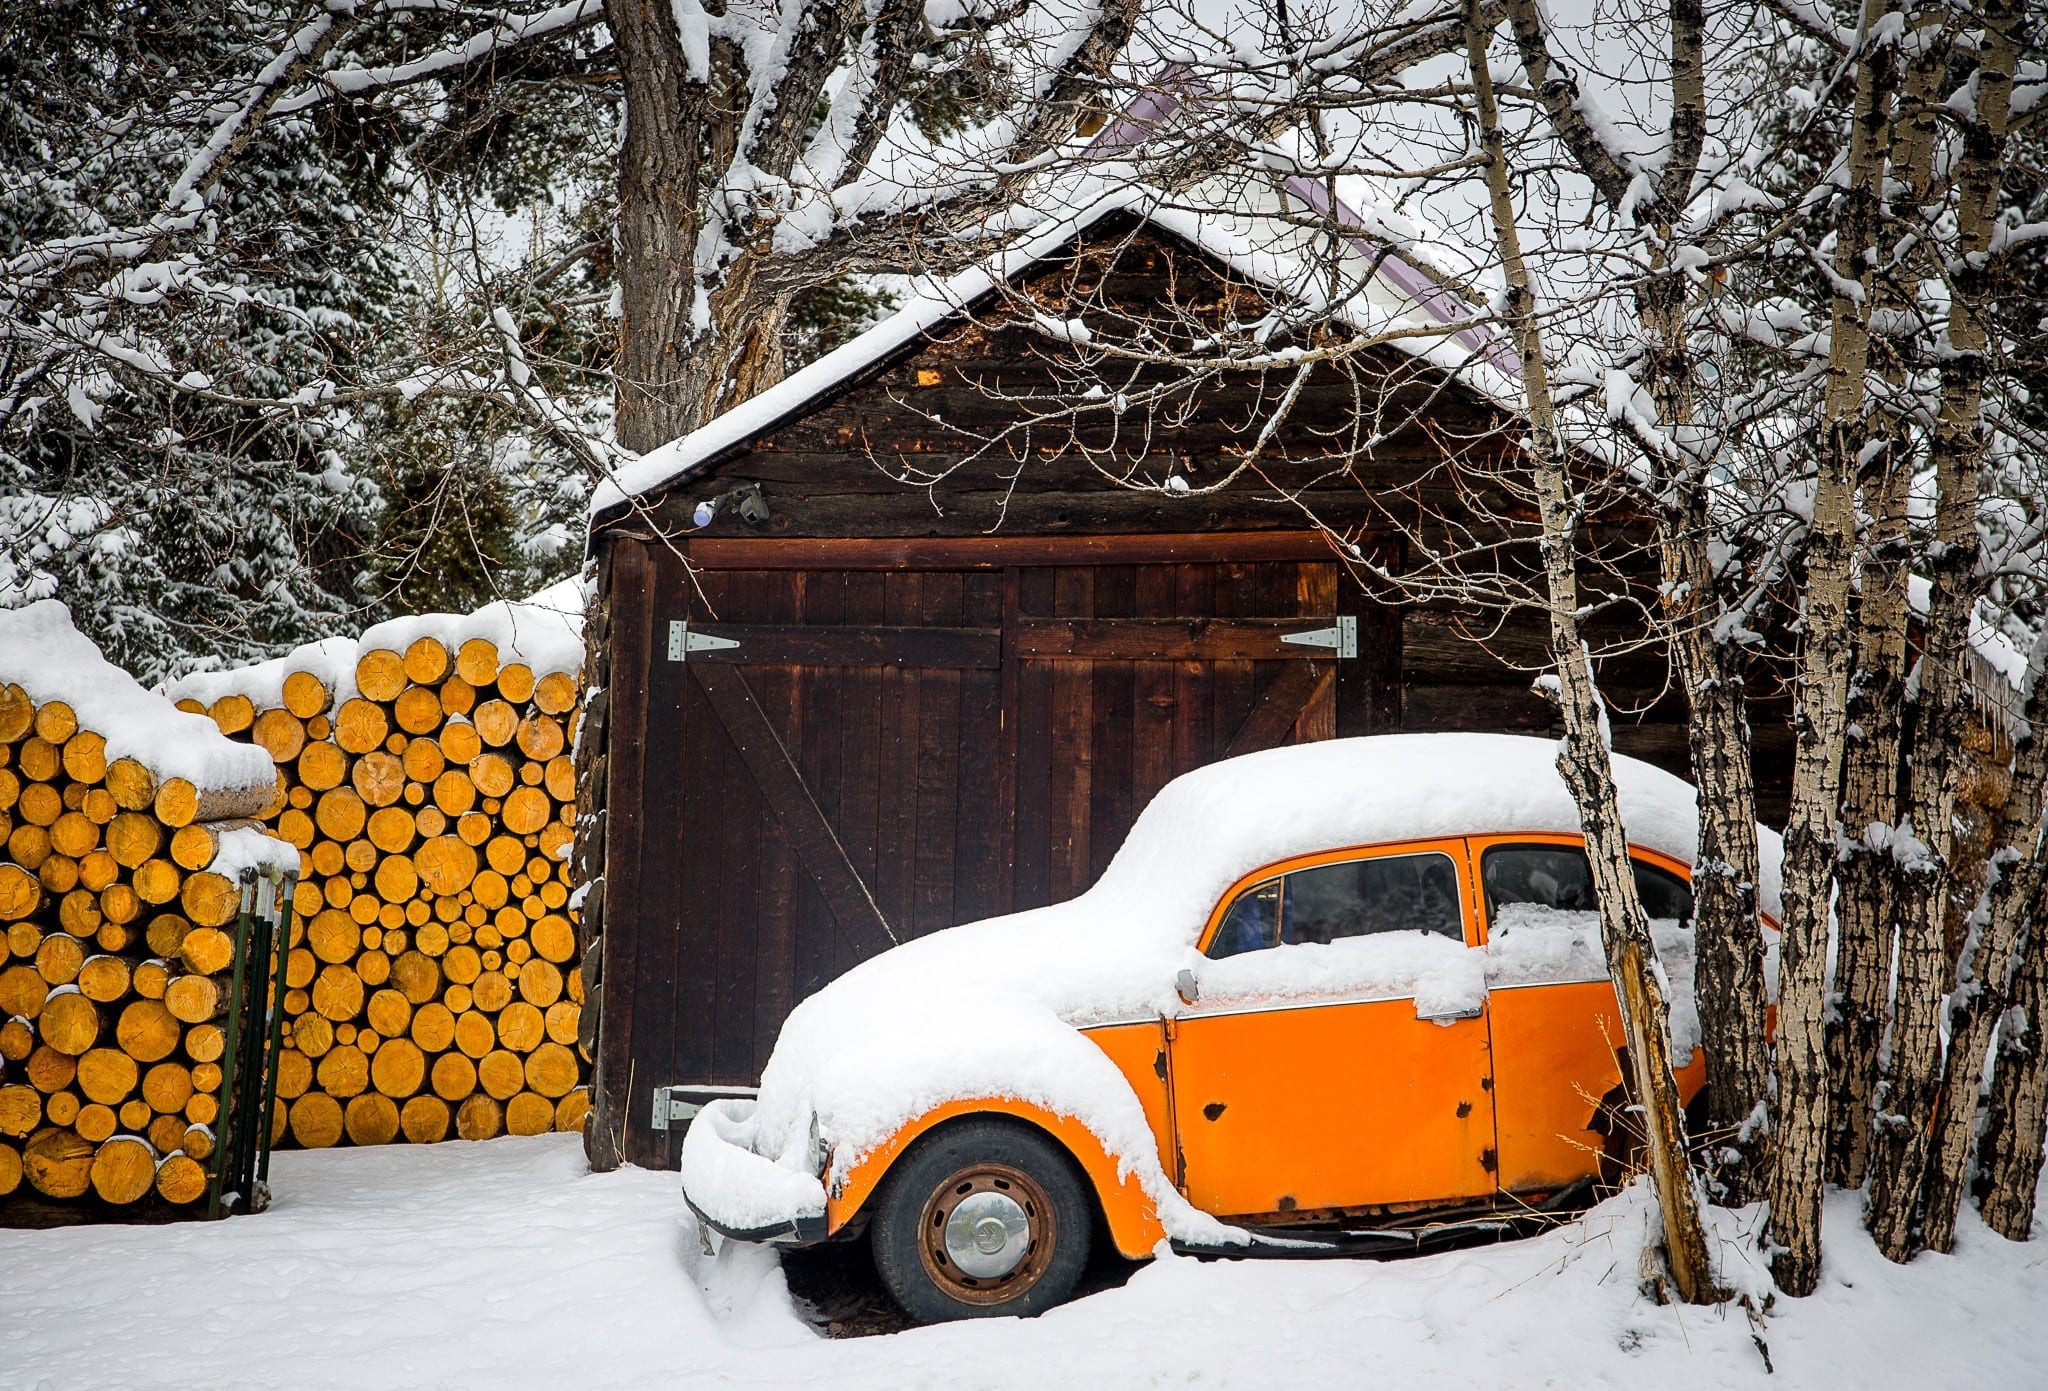 An orange Volkswagen beetle covered in snow